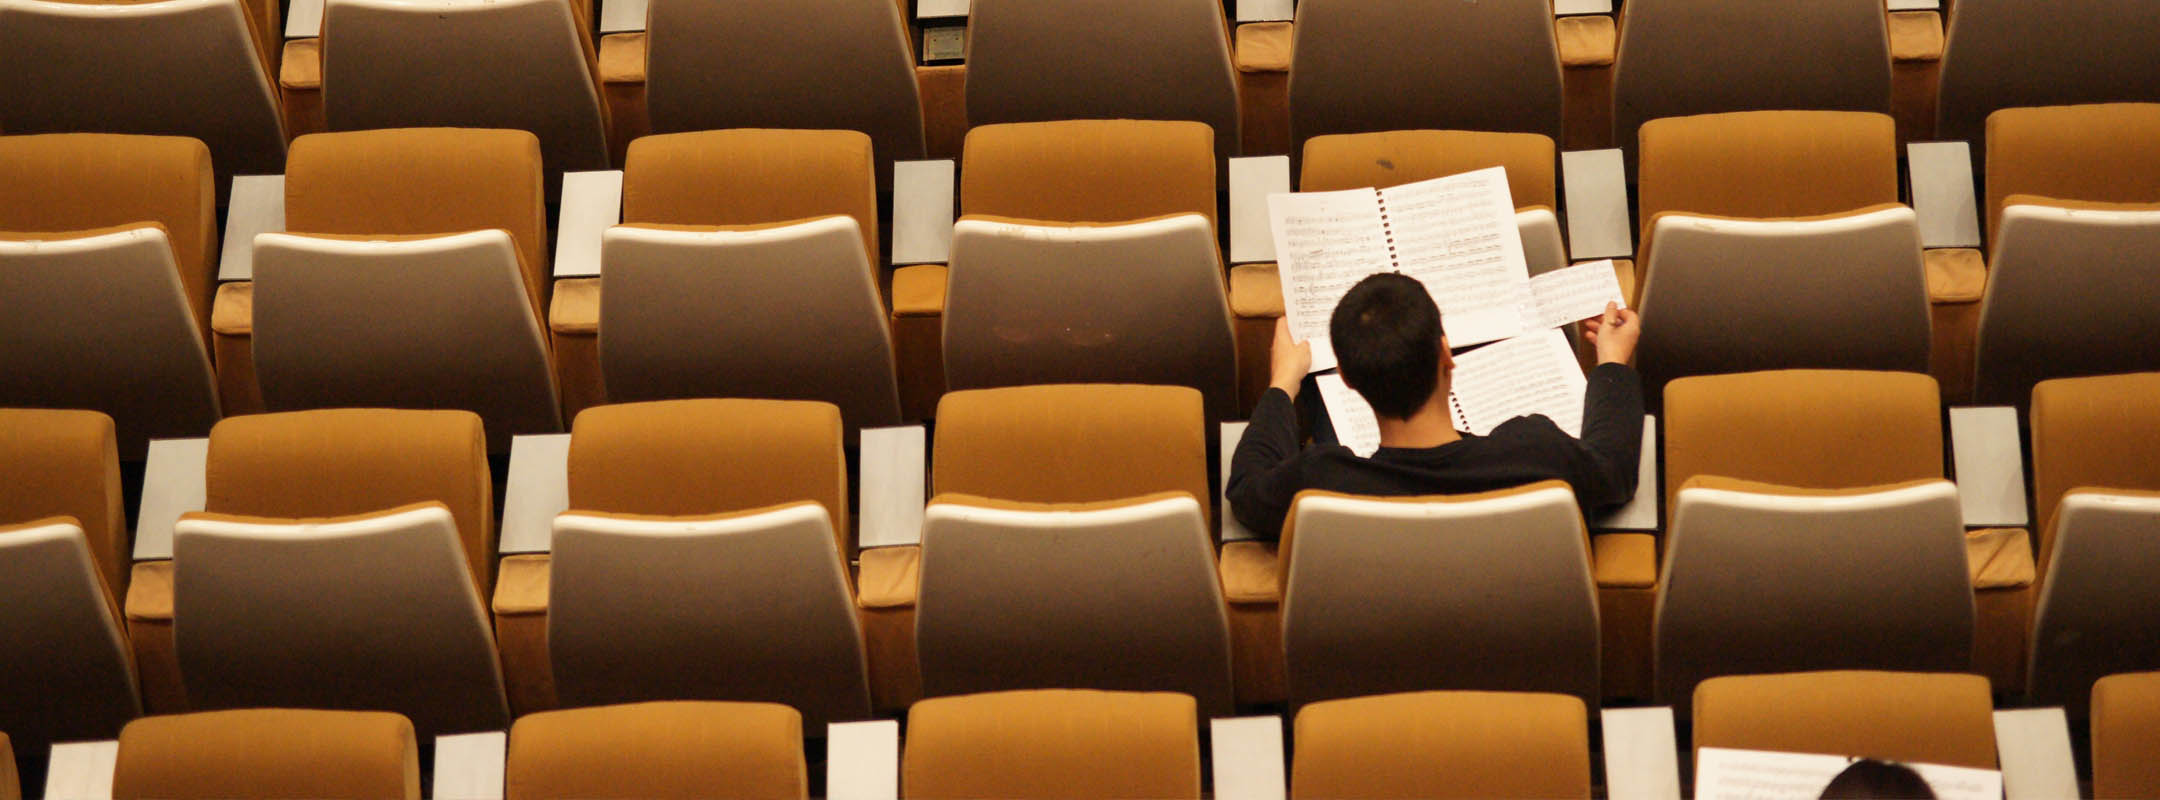 Ein Mann sitzt in einem leeren Hörsaal und liest etwas